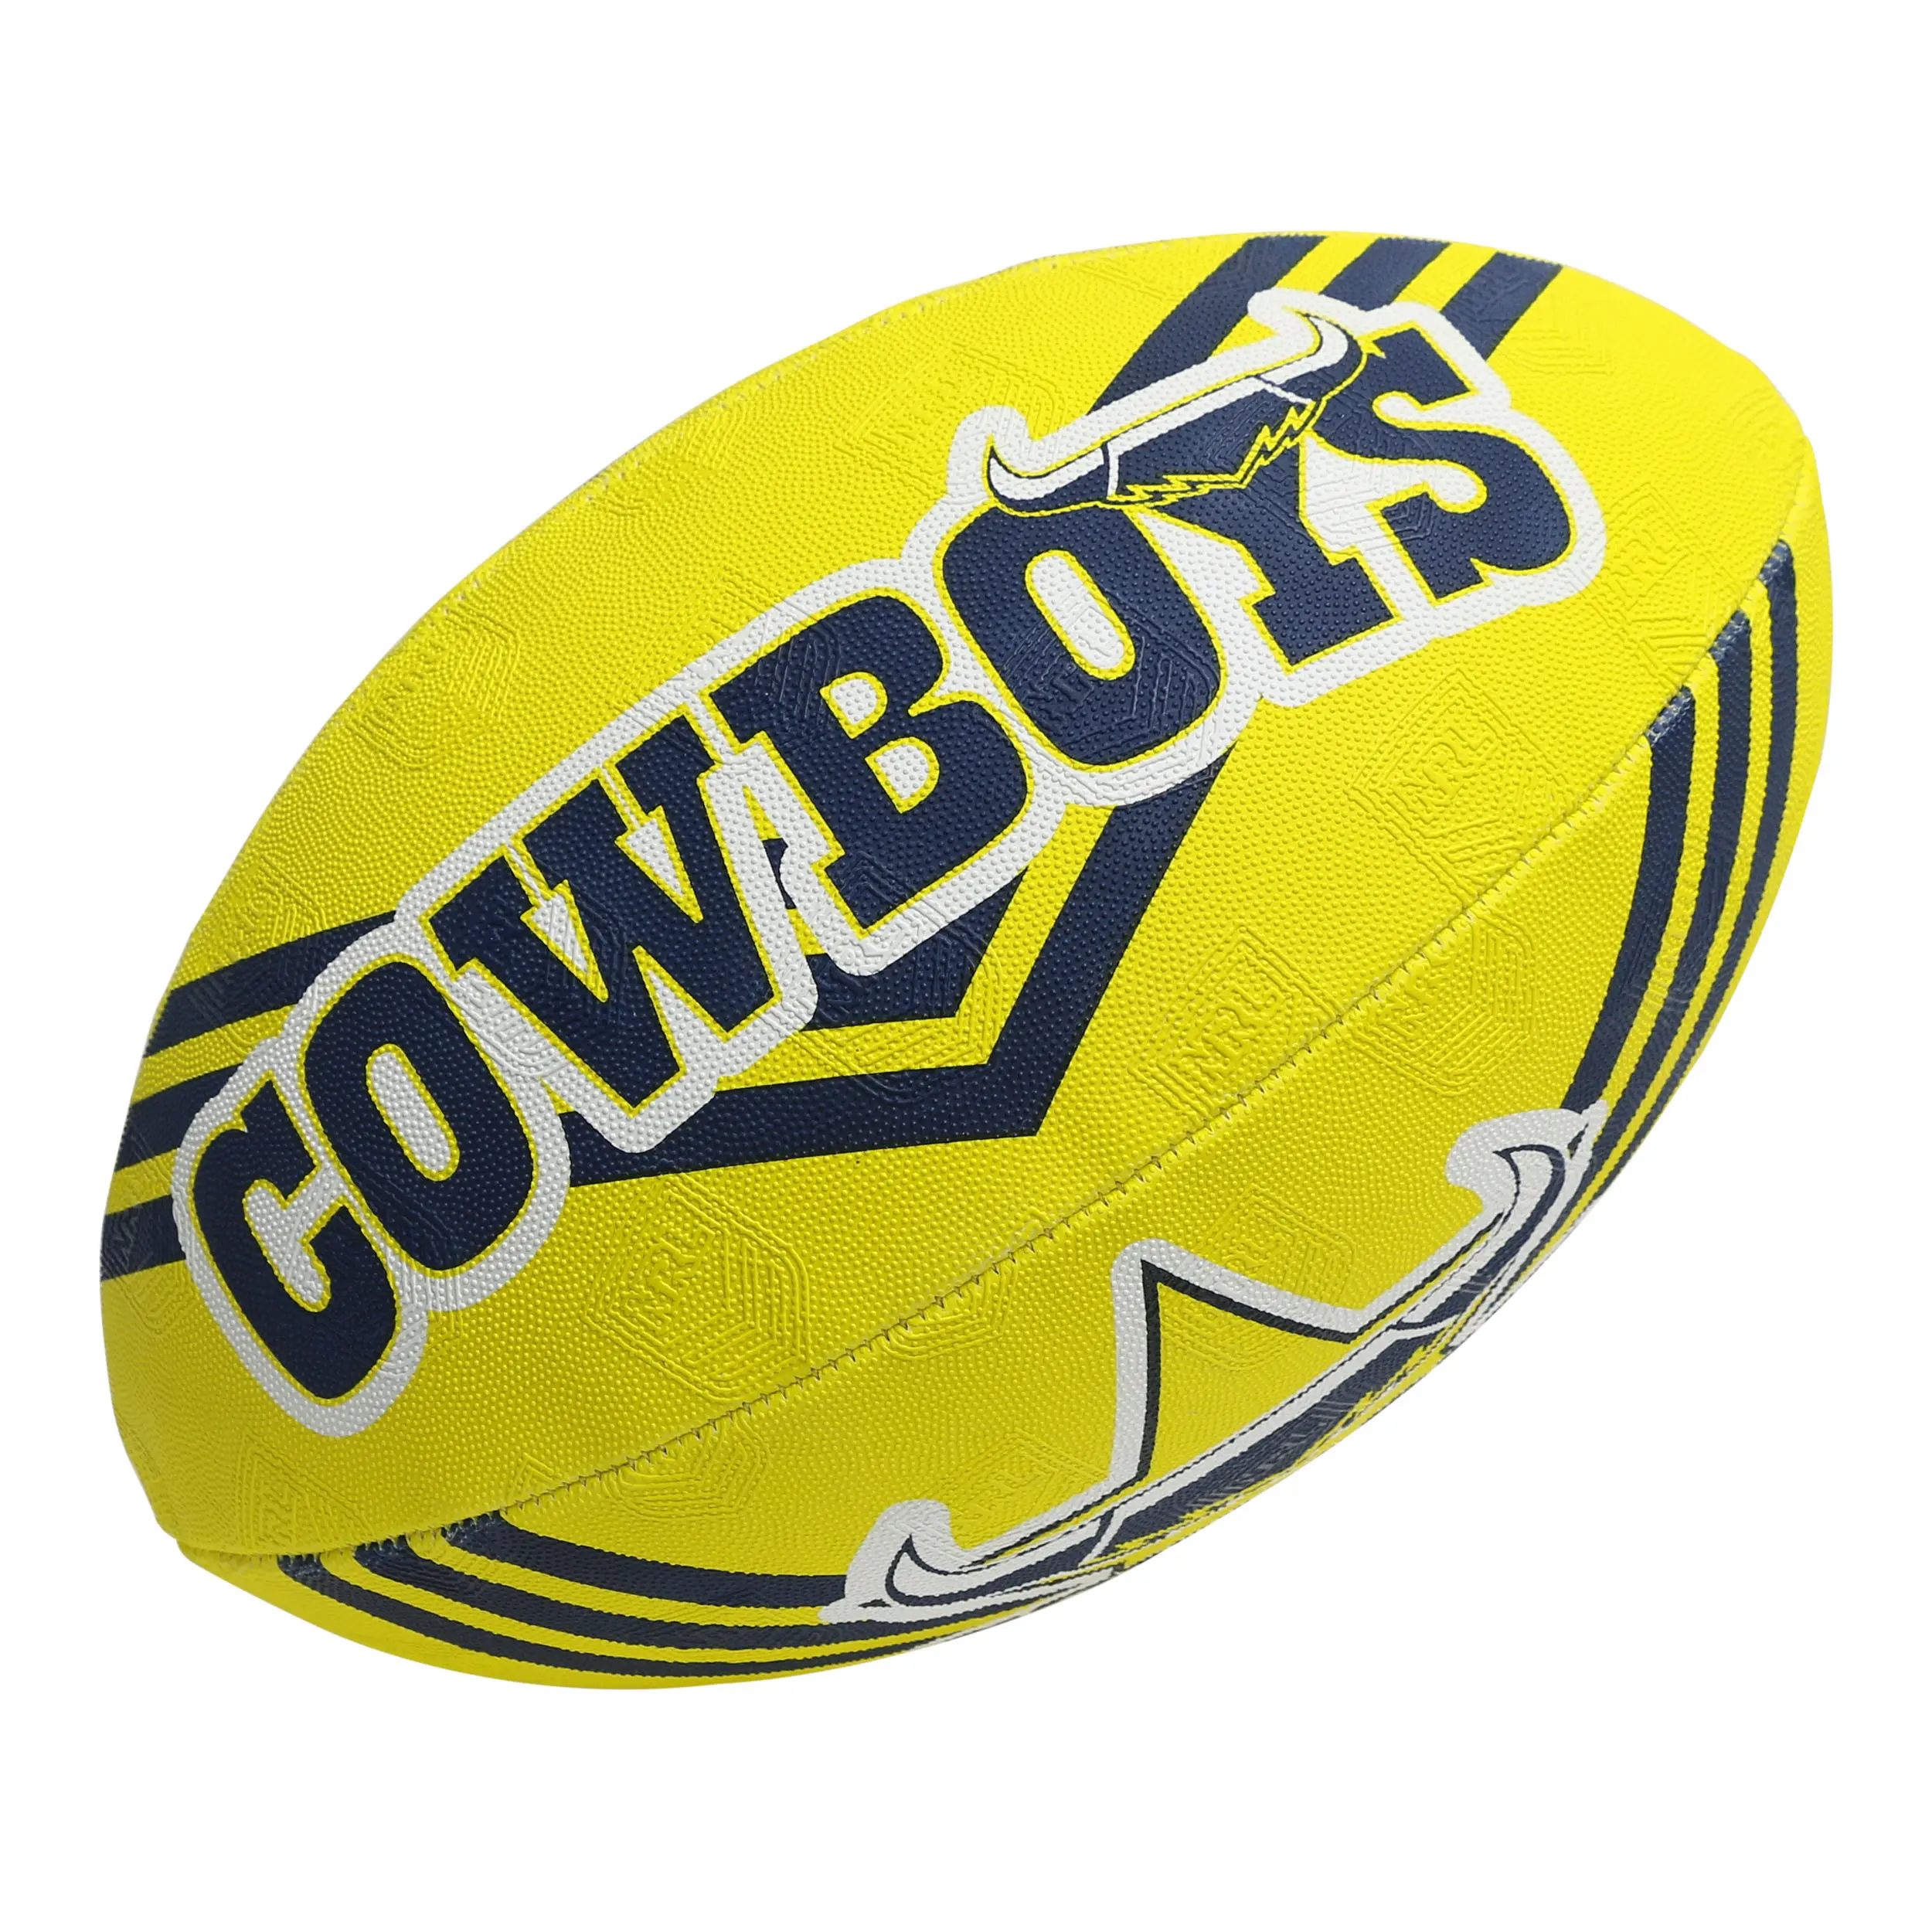 Profesyonel eğitim seviyesi dokunmatik futbol dokunmatik Rugby topu dokunmatik topu syn kauçuk yapılmış tamamen el dikili mesane ile donatılmış